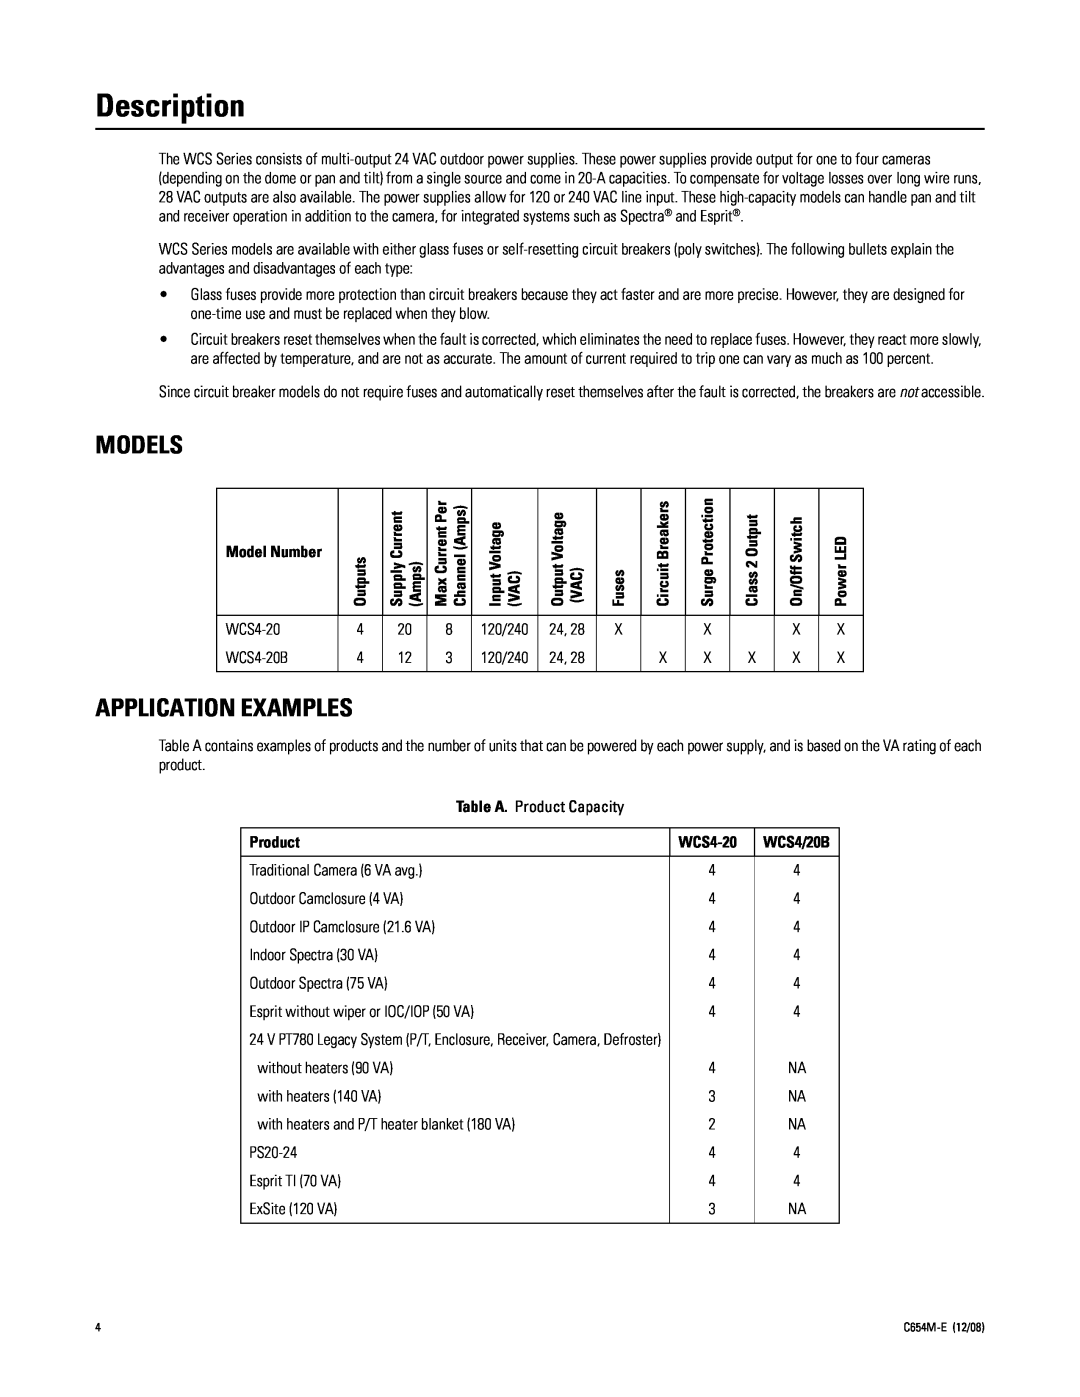 Pelco C654M-E (12/08) 3 manual Description, Models, Application Examples 